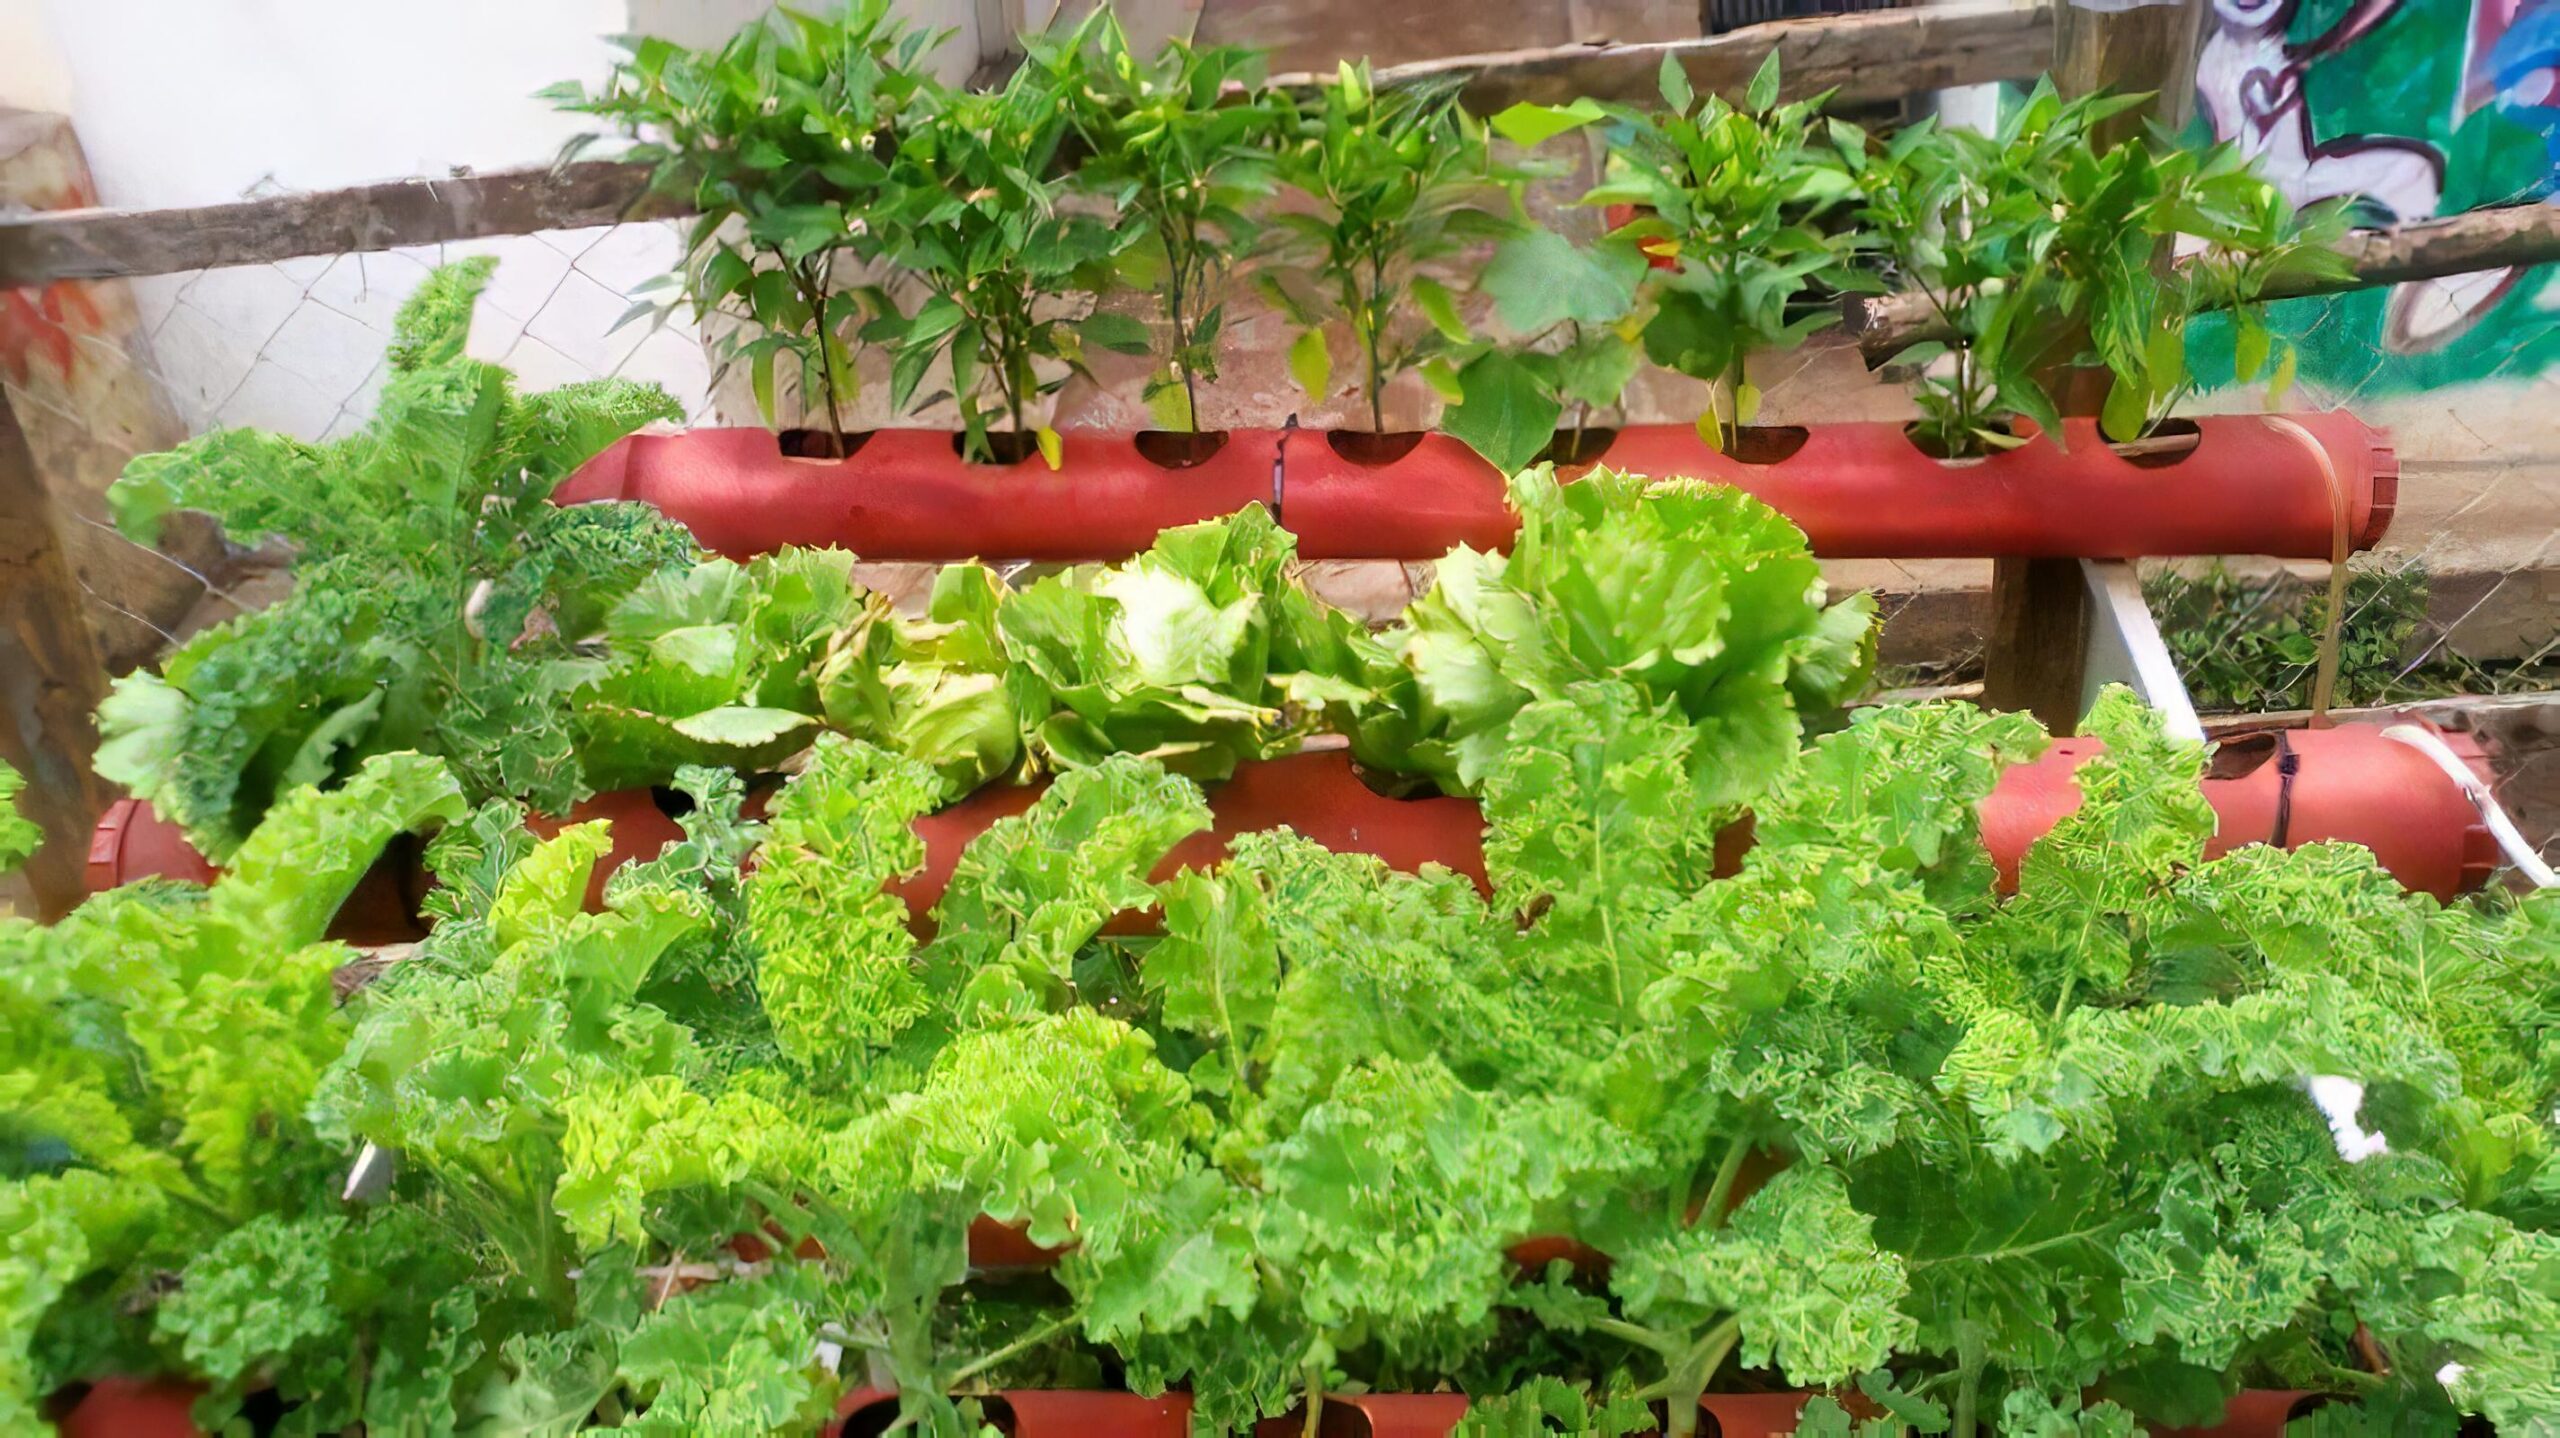 Revolutionizing Urban Farming